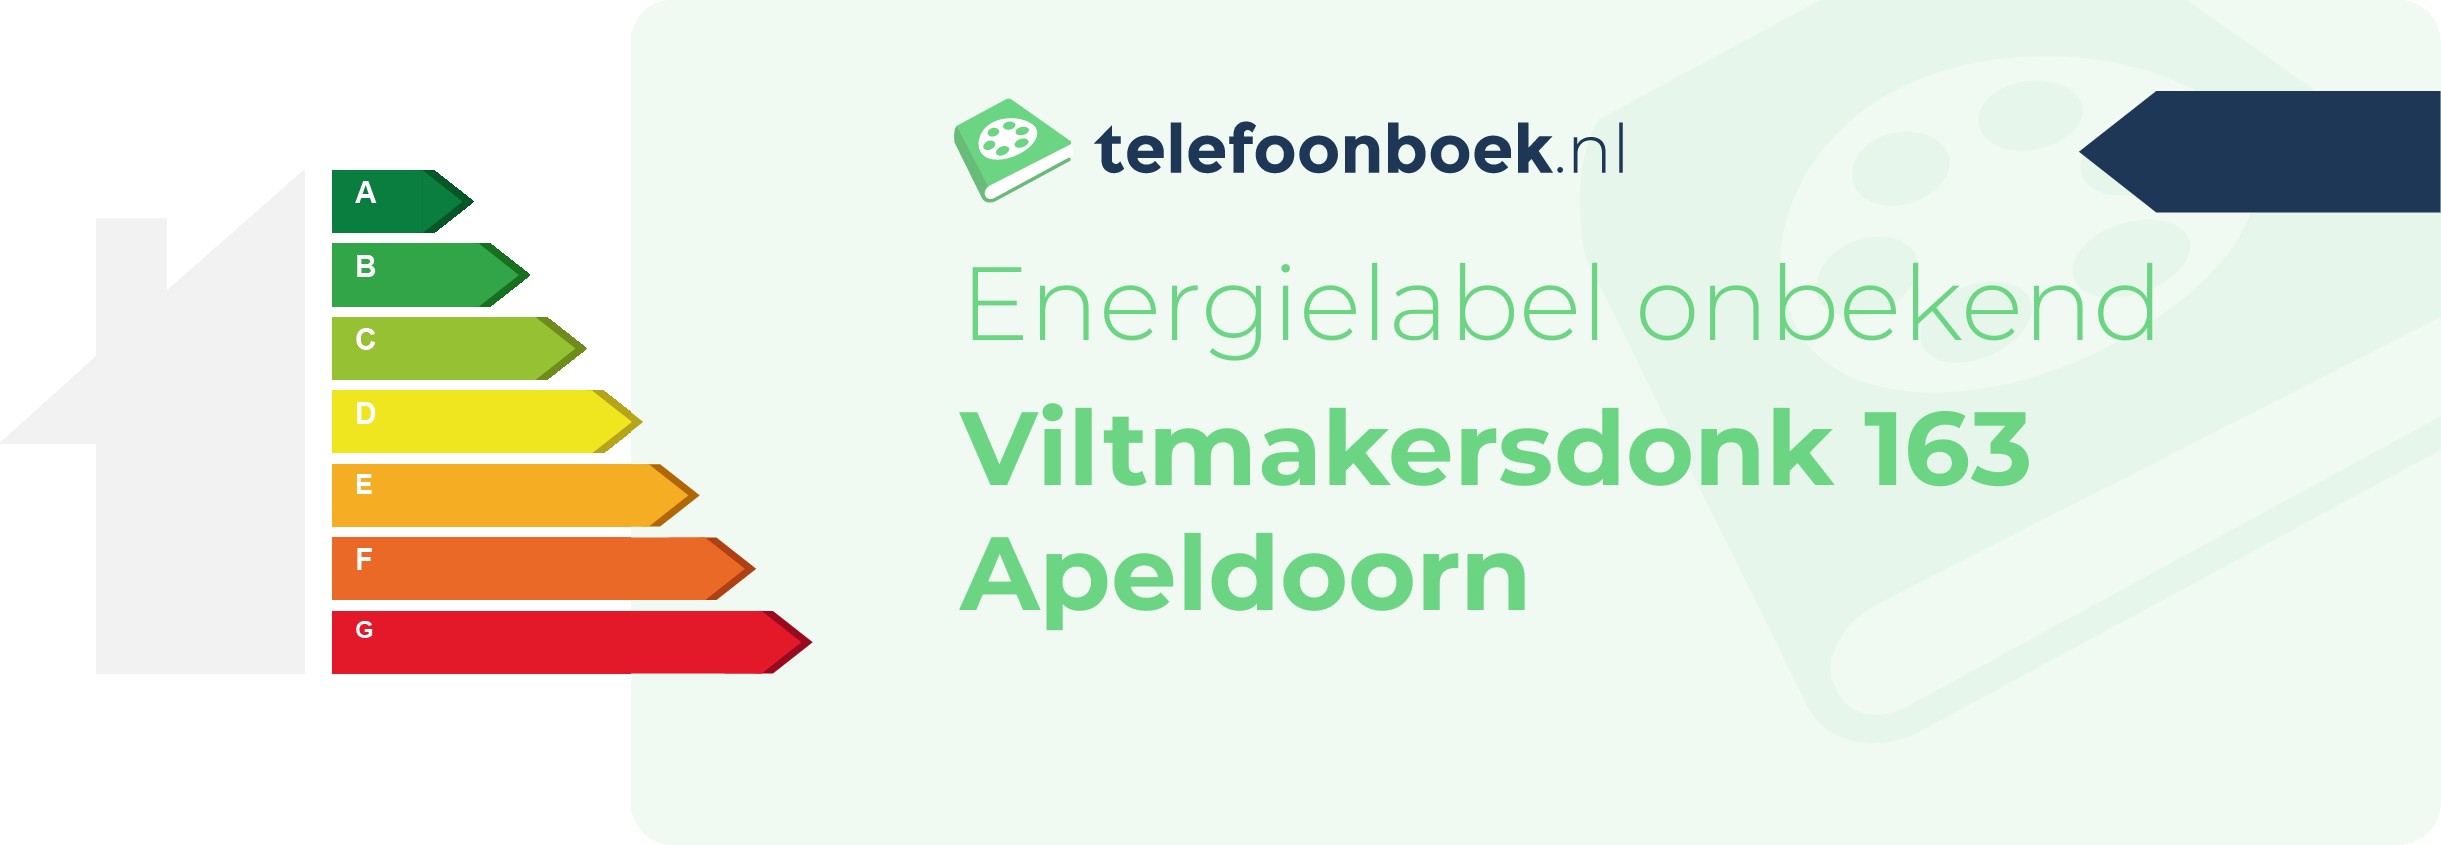 Energielabel Viltmakersdonk 163 Apeldoorn